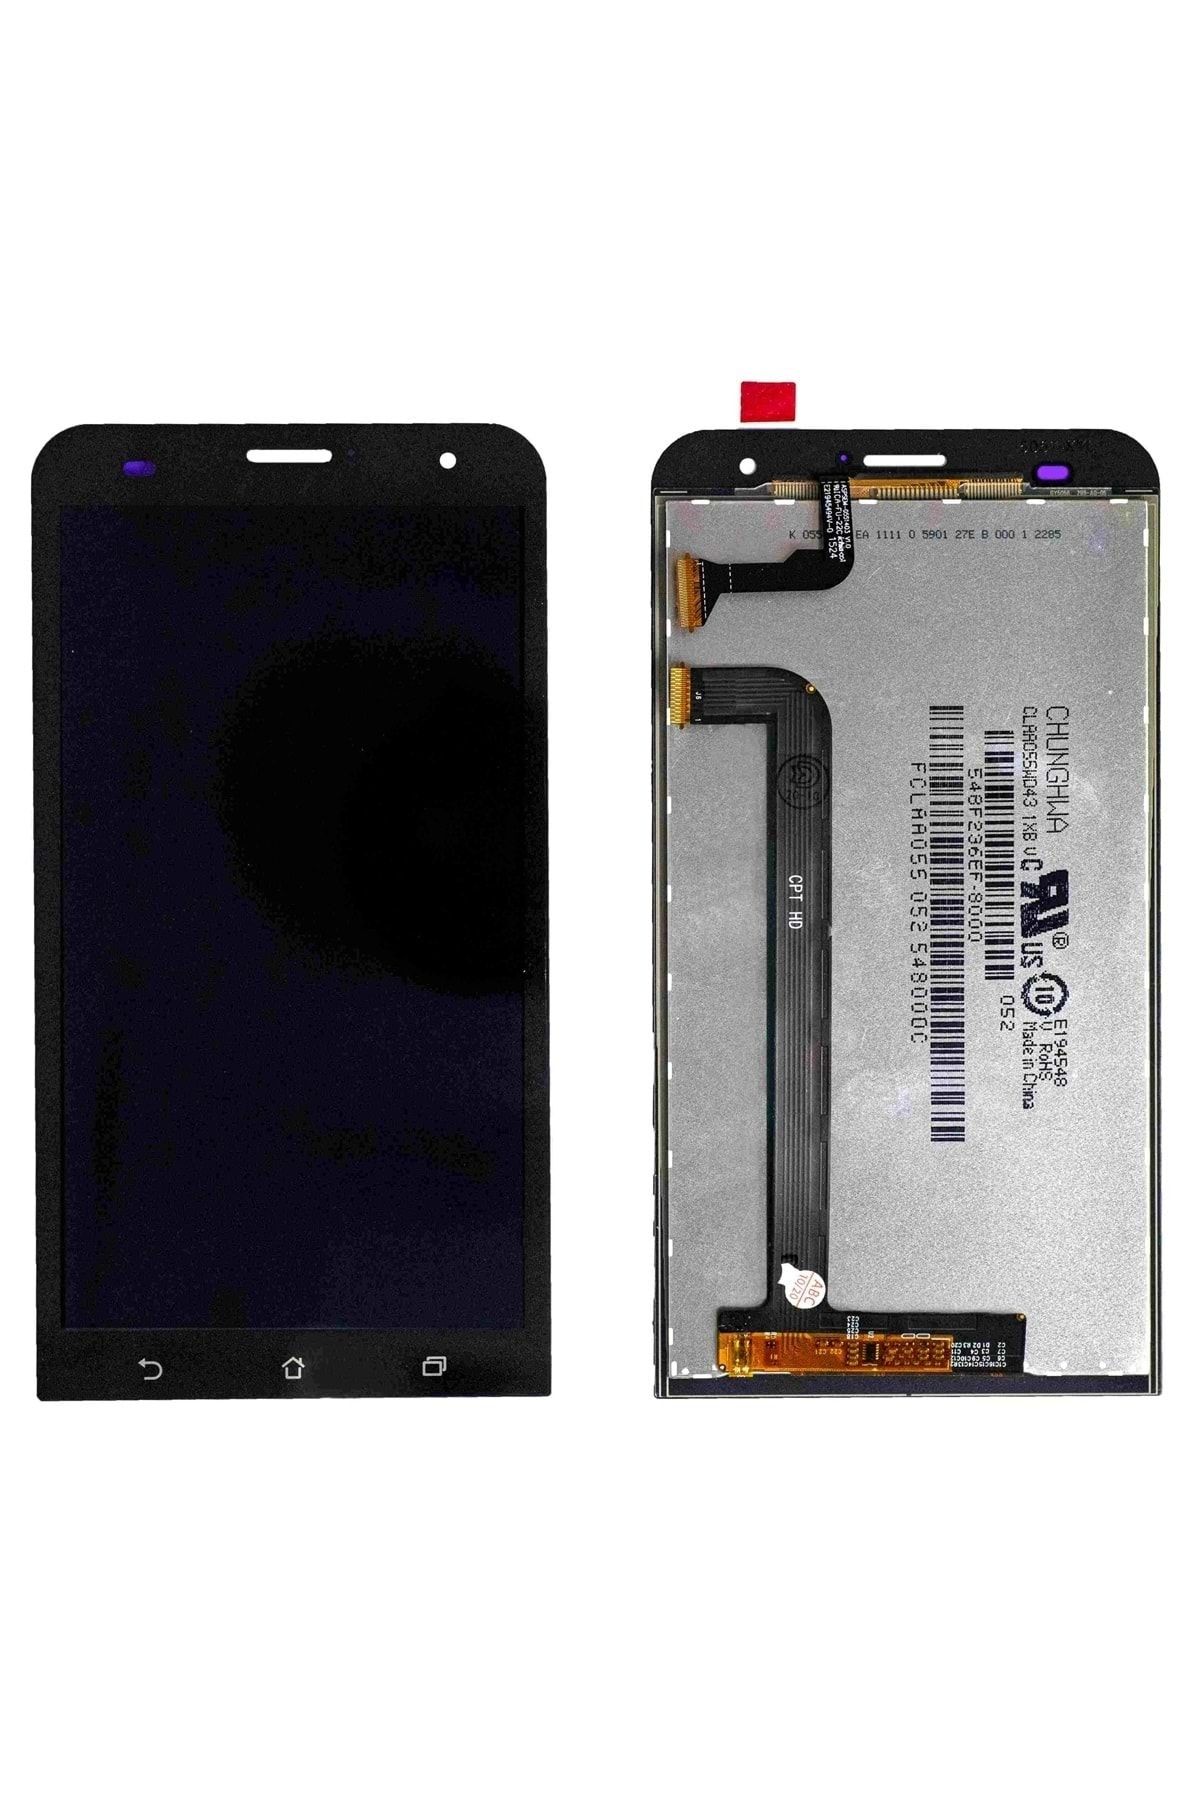 ASUS Zenfone 2 Lazer 5.5 Lcd Orj Siyah